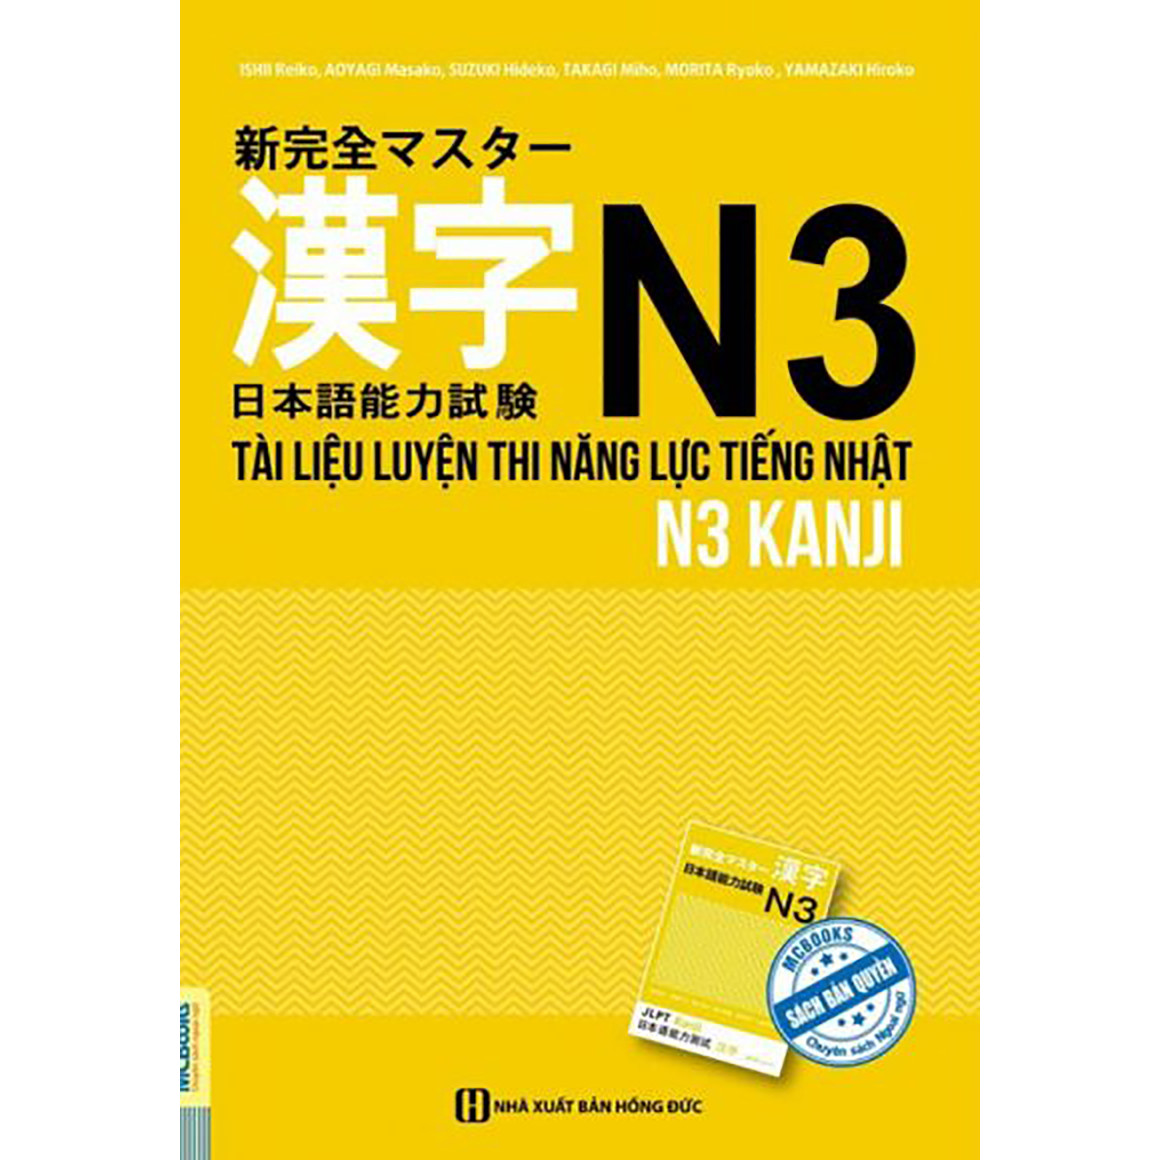 Tài Liệu Luyện Thi Năng Lực Tiếng Nhật N3 - Kanji Tặng Thẻ Flashcard Học Từ Vựng Kanji Học Kèm App MCBooks Application